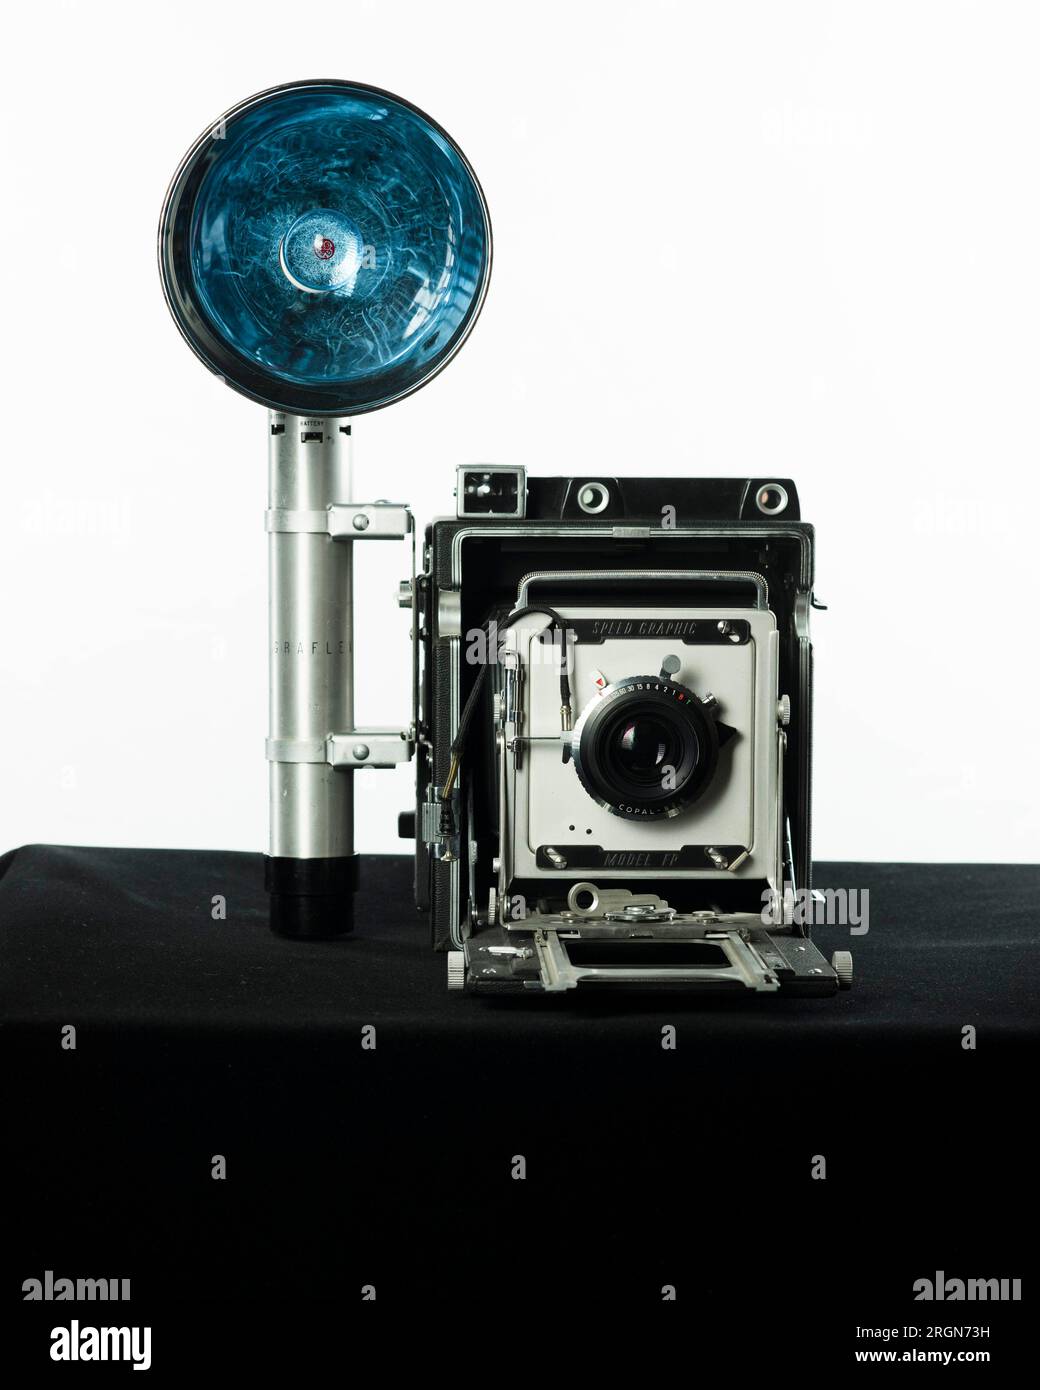 Histoire du FBI : caméra graphique Graflex Speed, produite à l'origine en  1912 par Gralfex et améliorée en 1947. Cet appareil a été fabriqué jusqu'en  1973. Le Graflex Speed Graphic Camera a